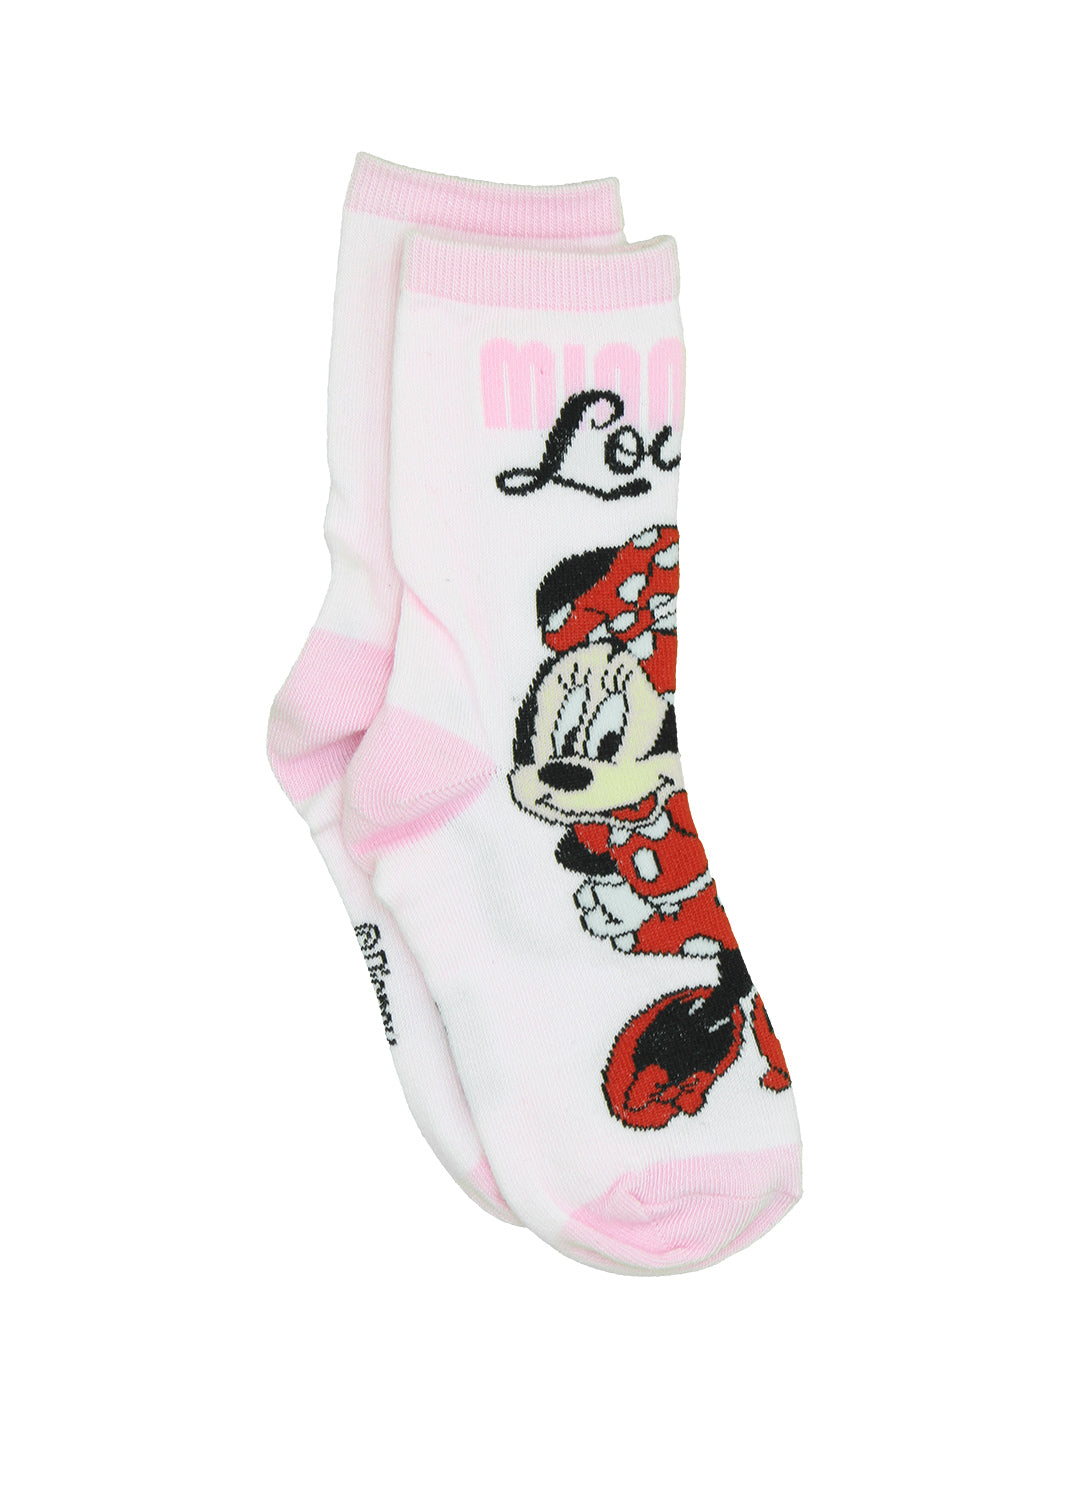 Chaussettes pour filles Minnie Mouse classiques - Paquet de 6 